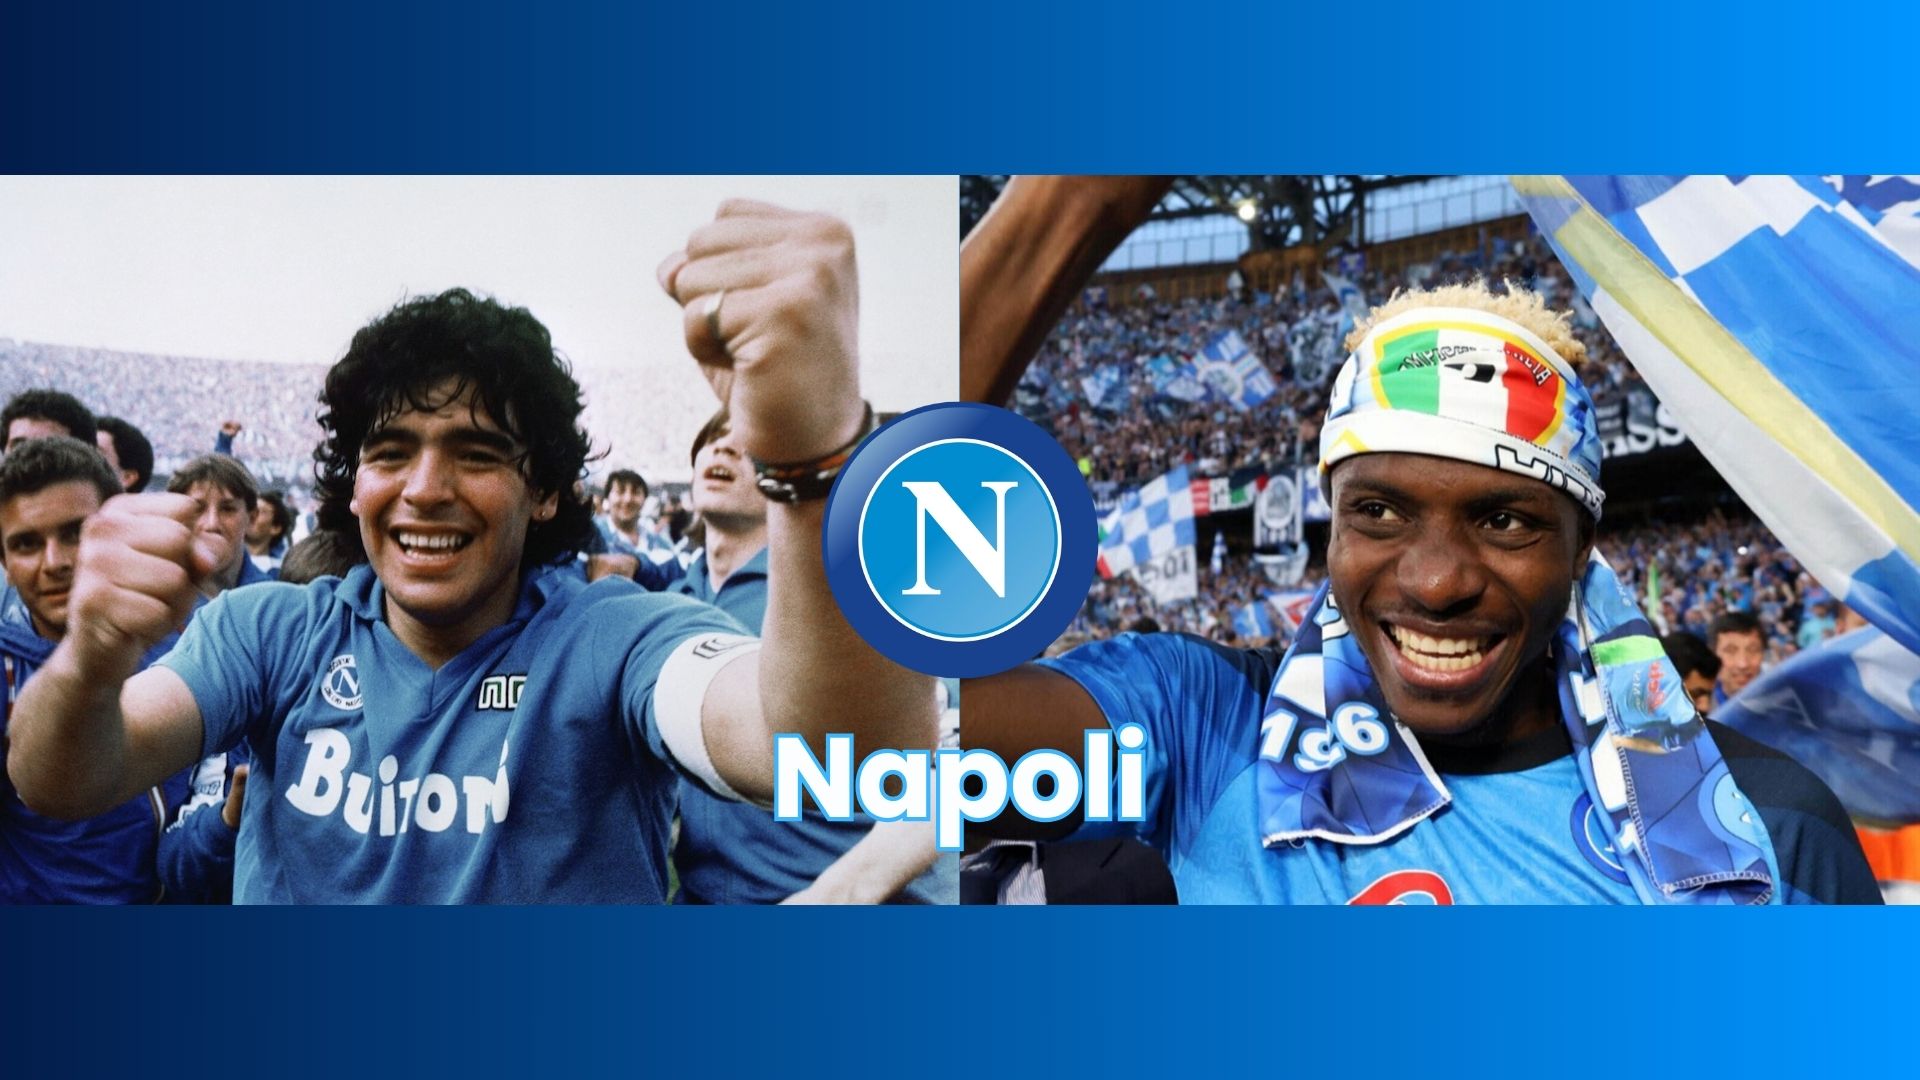 Il Napoli di Maradona e di Osimhen: confronto tra due epoche gloriose del calcio partenopeo.